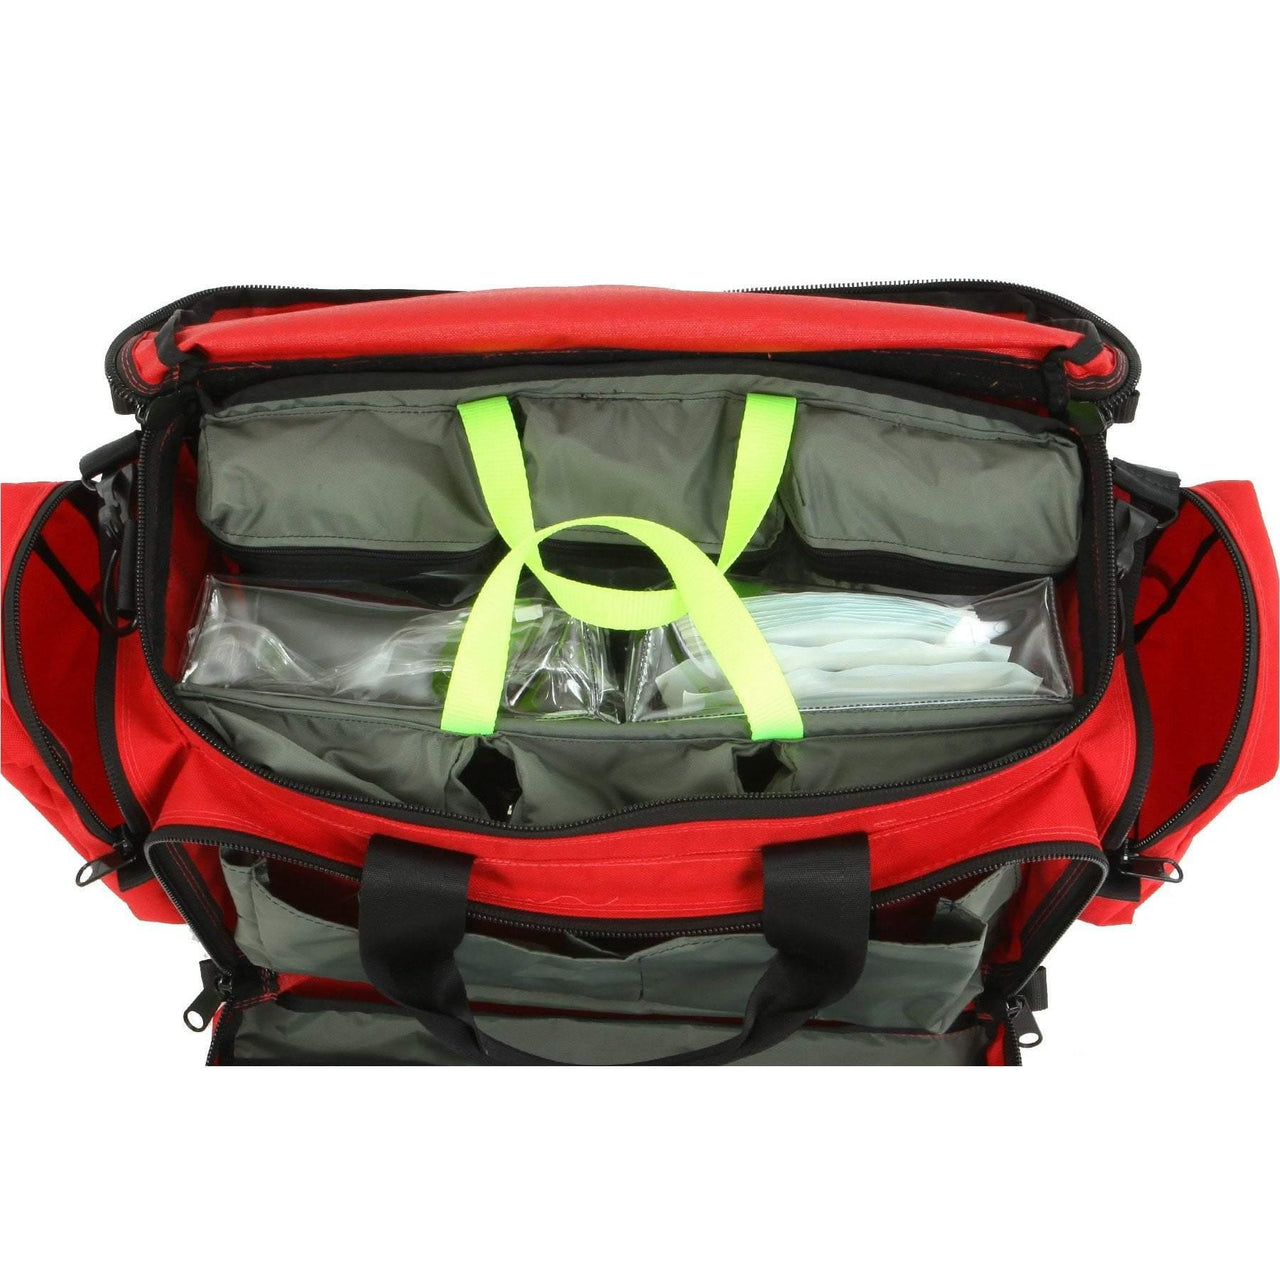 "Z" PAK - Trauma Bag Supply Insert - Vendor